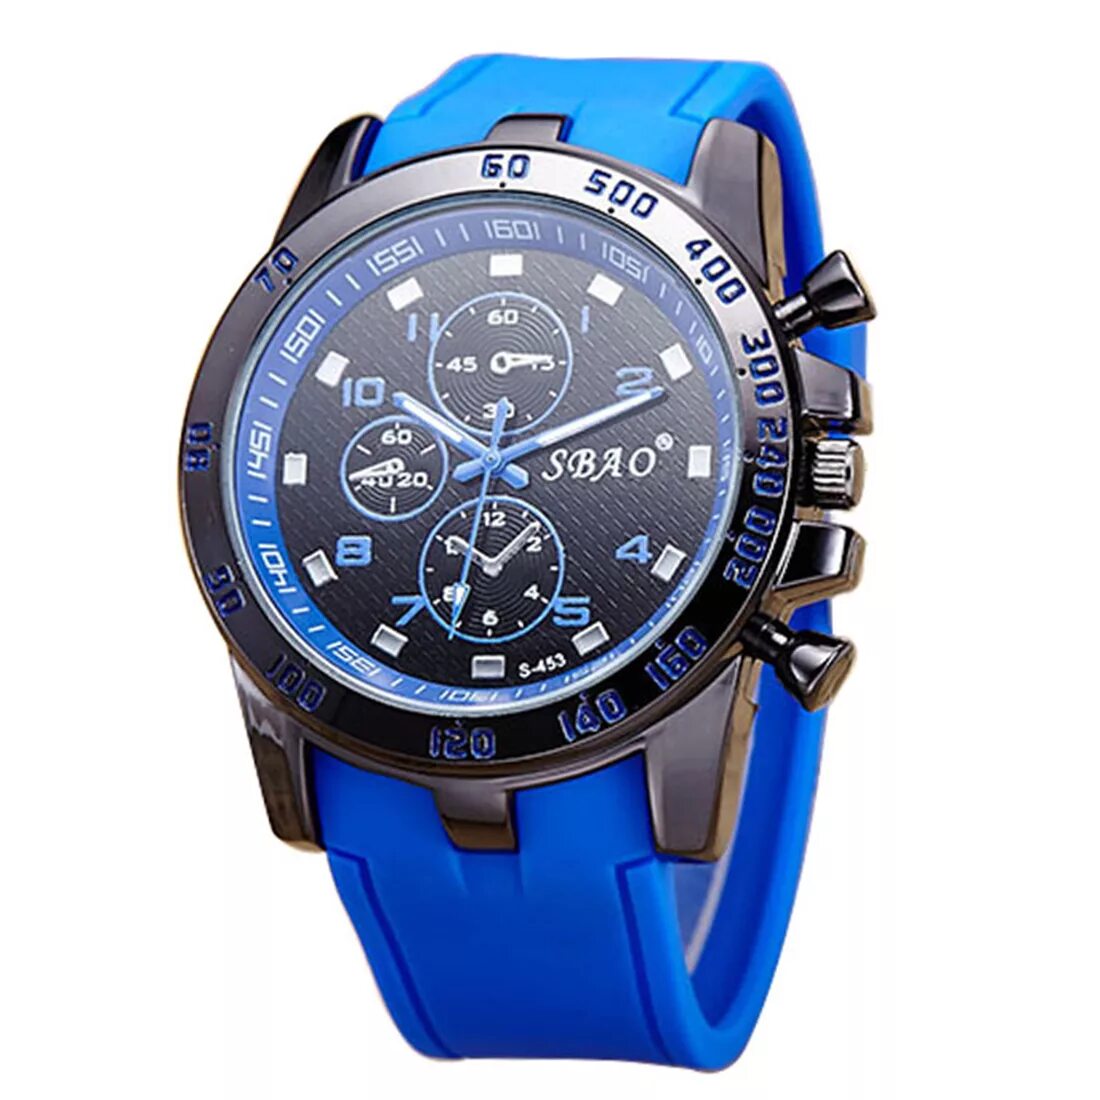 Синие часы. SBAO часы. Часы наручные Activ SBAO мужские с силиконовым ремешком (Blue/Black). Часы Fossil мужские с синим циферблатом. Часы с синим ремешком.